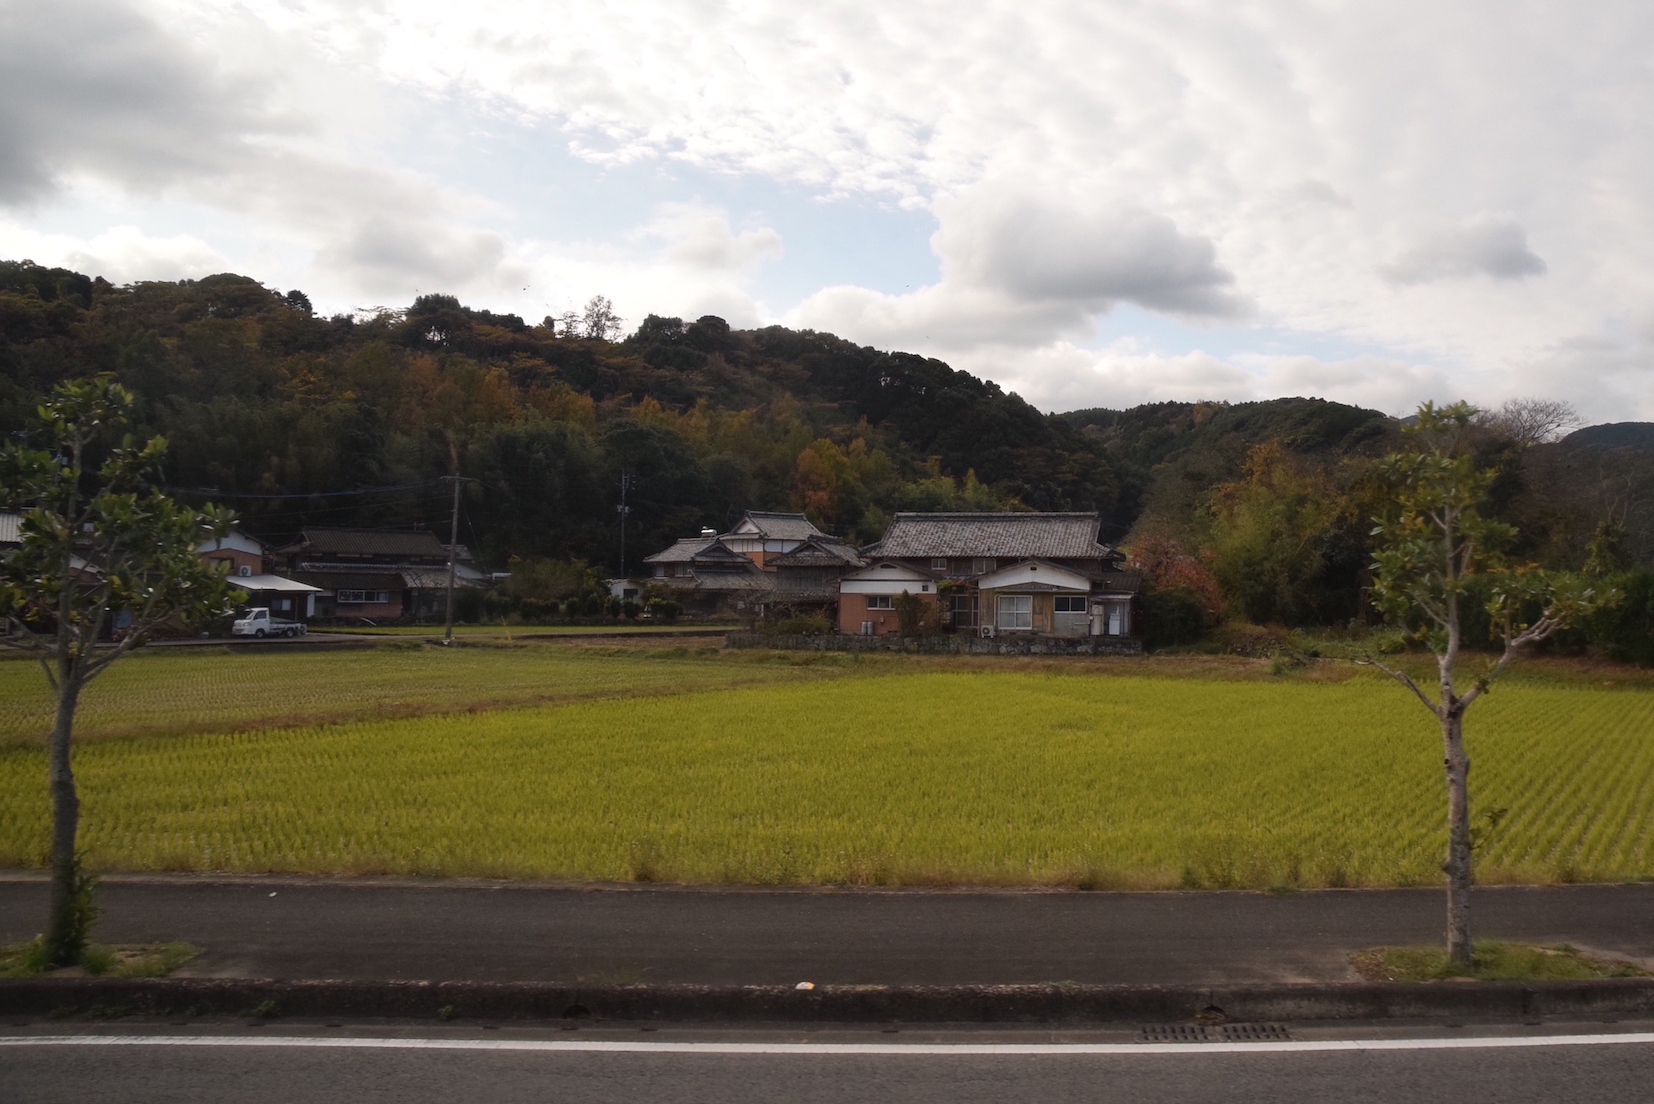 บ้านเก่า บ้านร้างในญี่ปุ่น